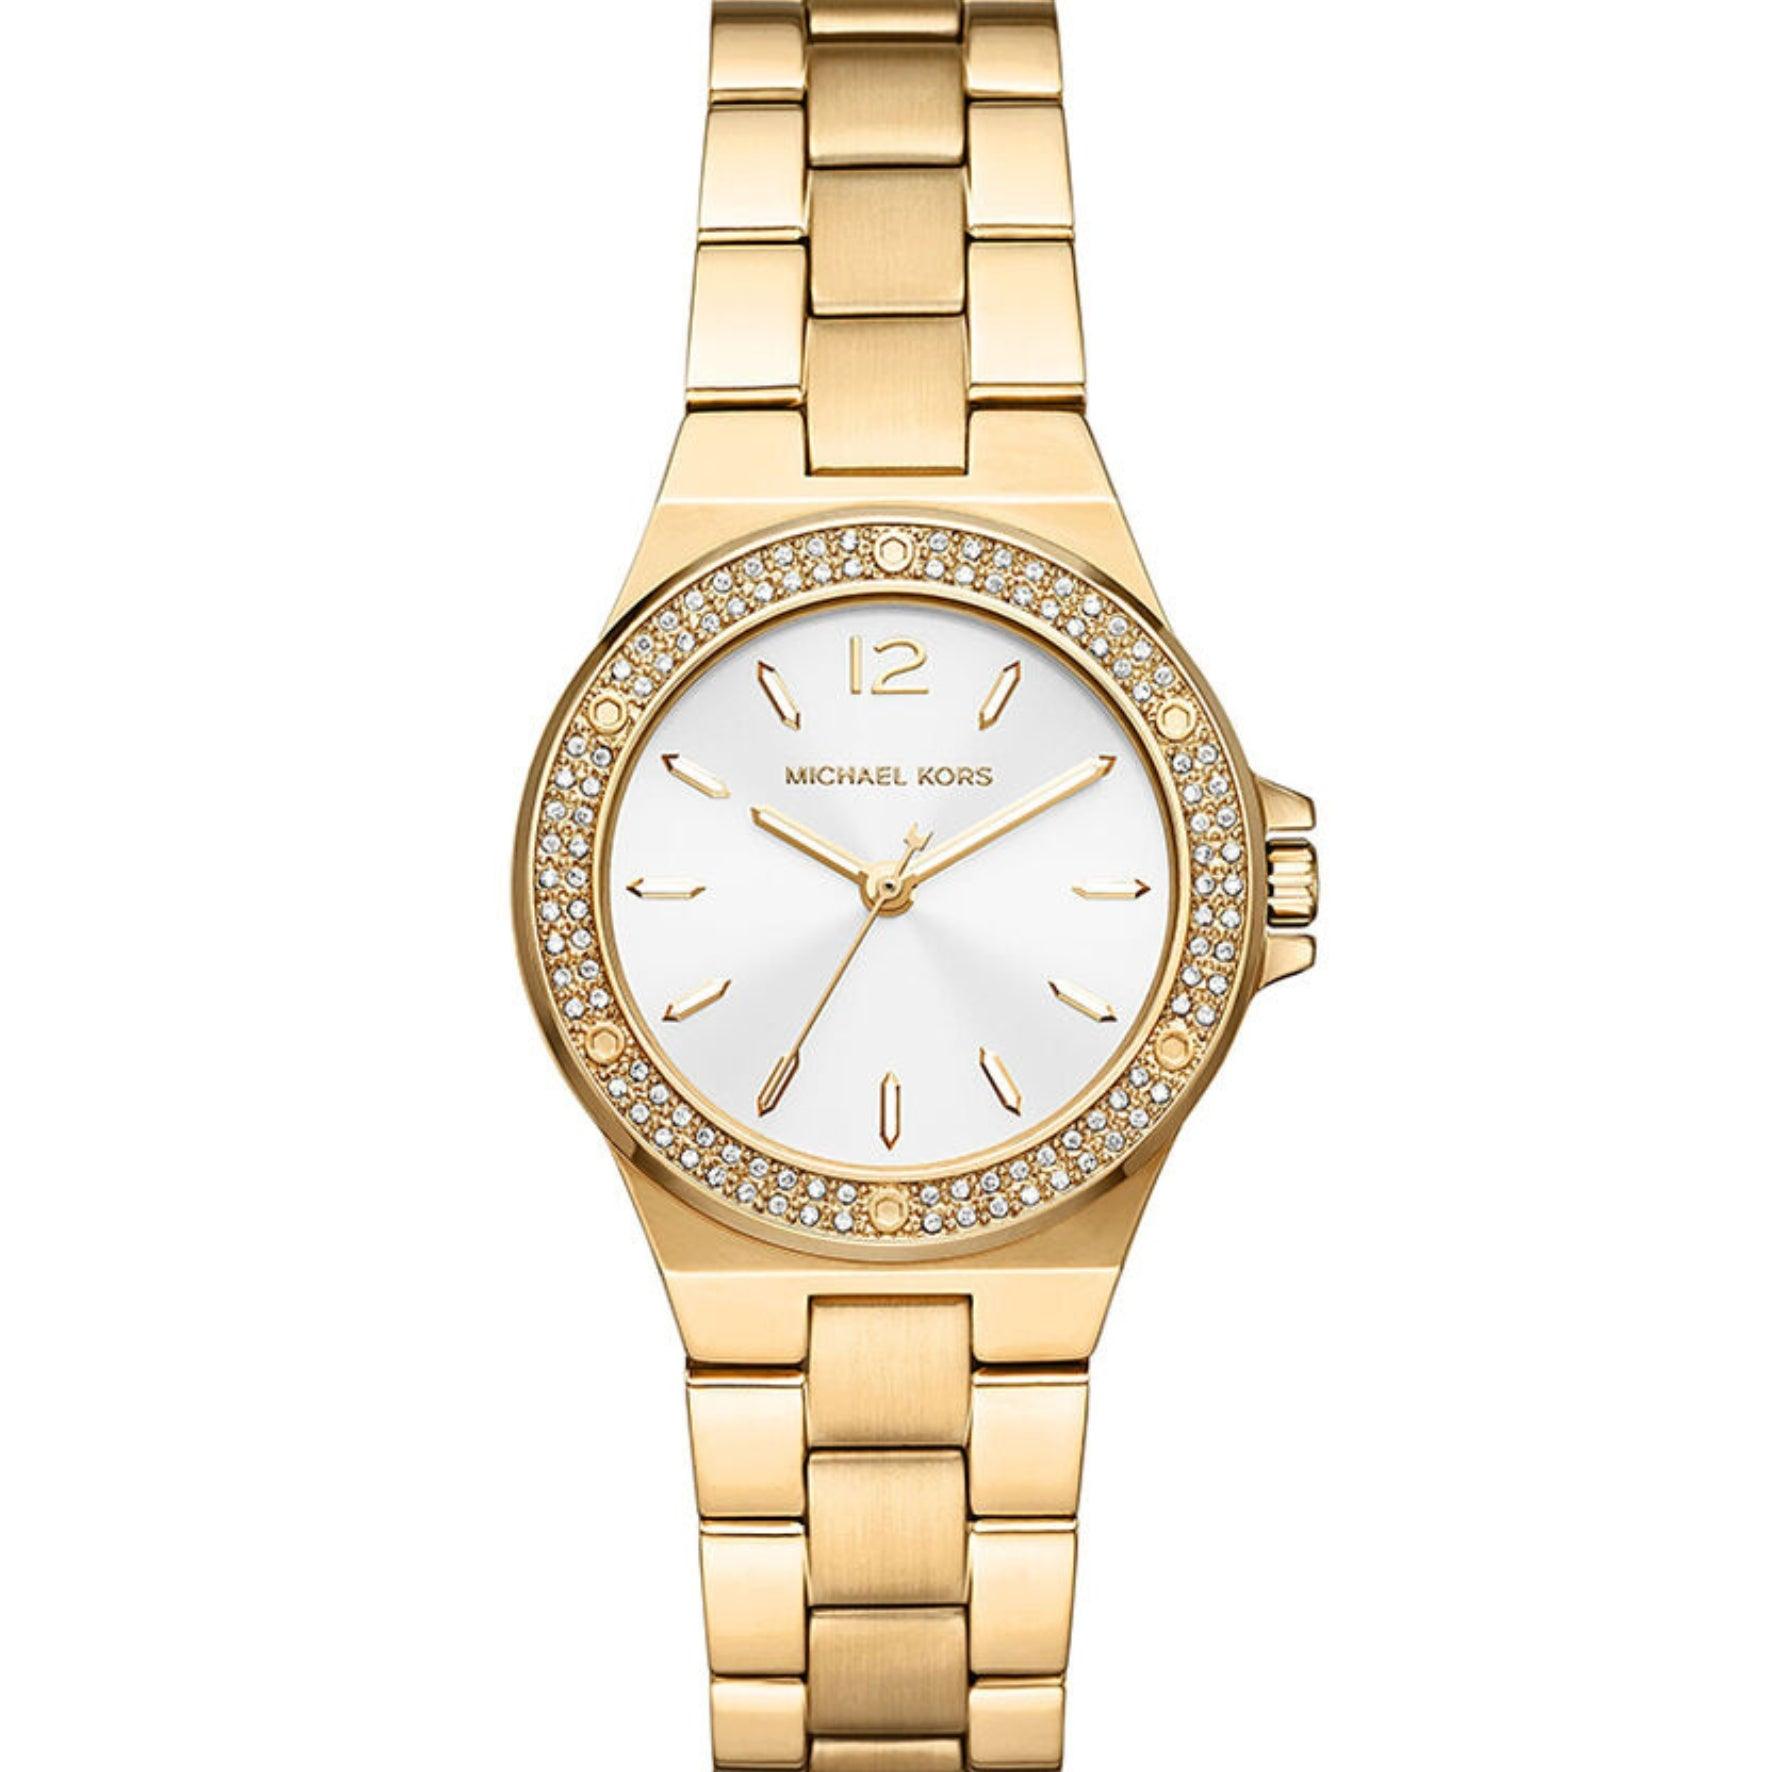 Γυναικείο ρολόι Michael Kors Lennox MK7278 με χρυσό μπρασελέ από ανοξείδωτο ατσάλι και κάσα σε στρογγυλό σχήμα διακοσμημένη με ζιργκόν.